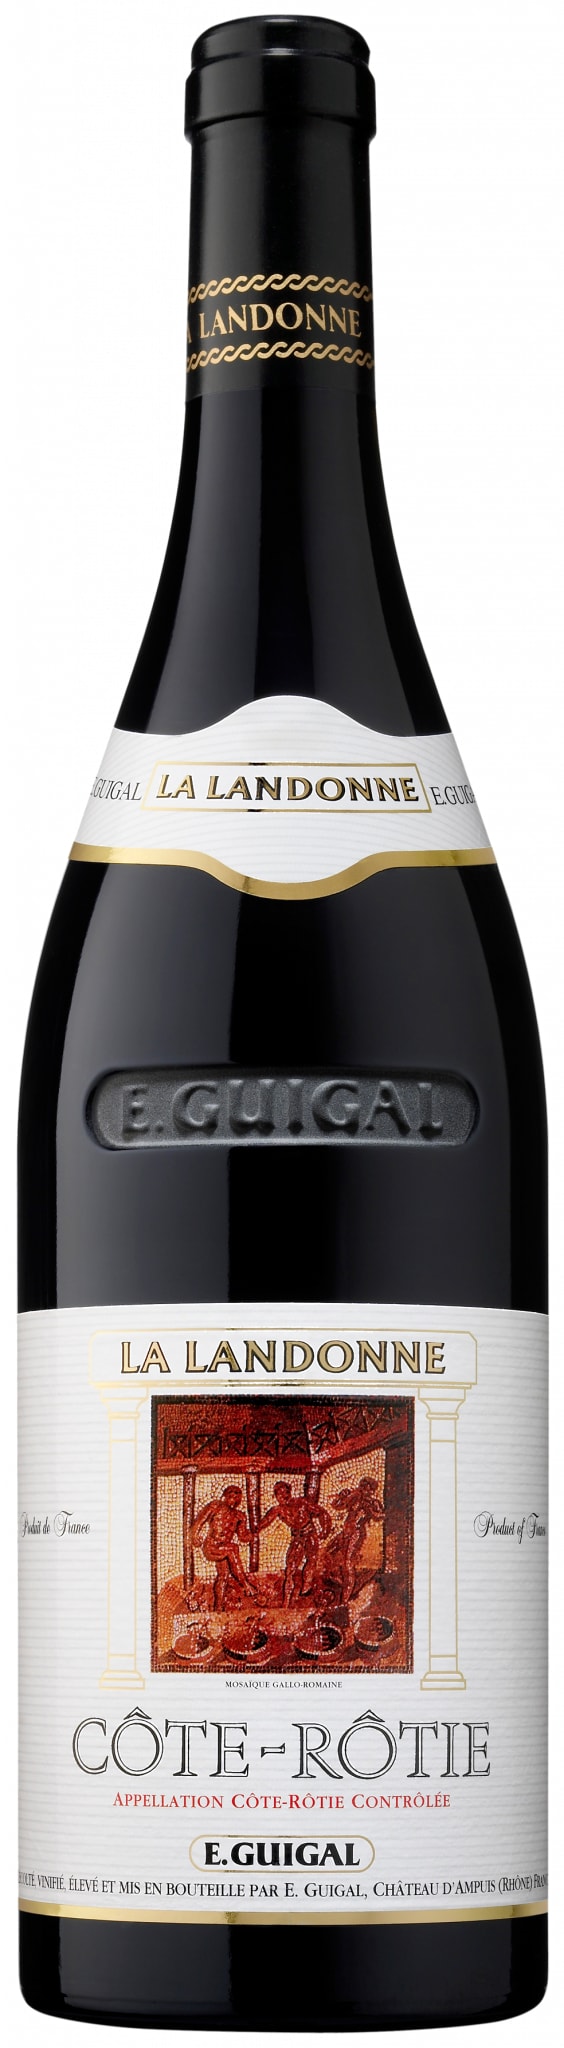 E. Guigal - Cote-Rotie La Landonne 2019 (750)